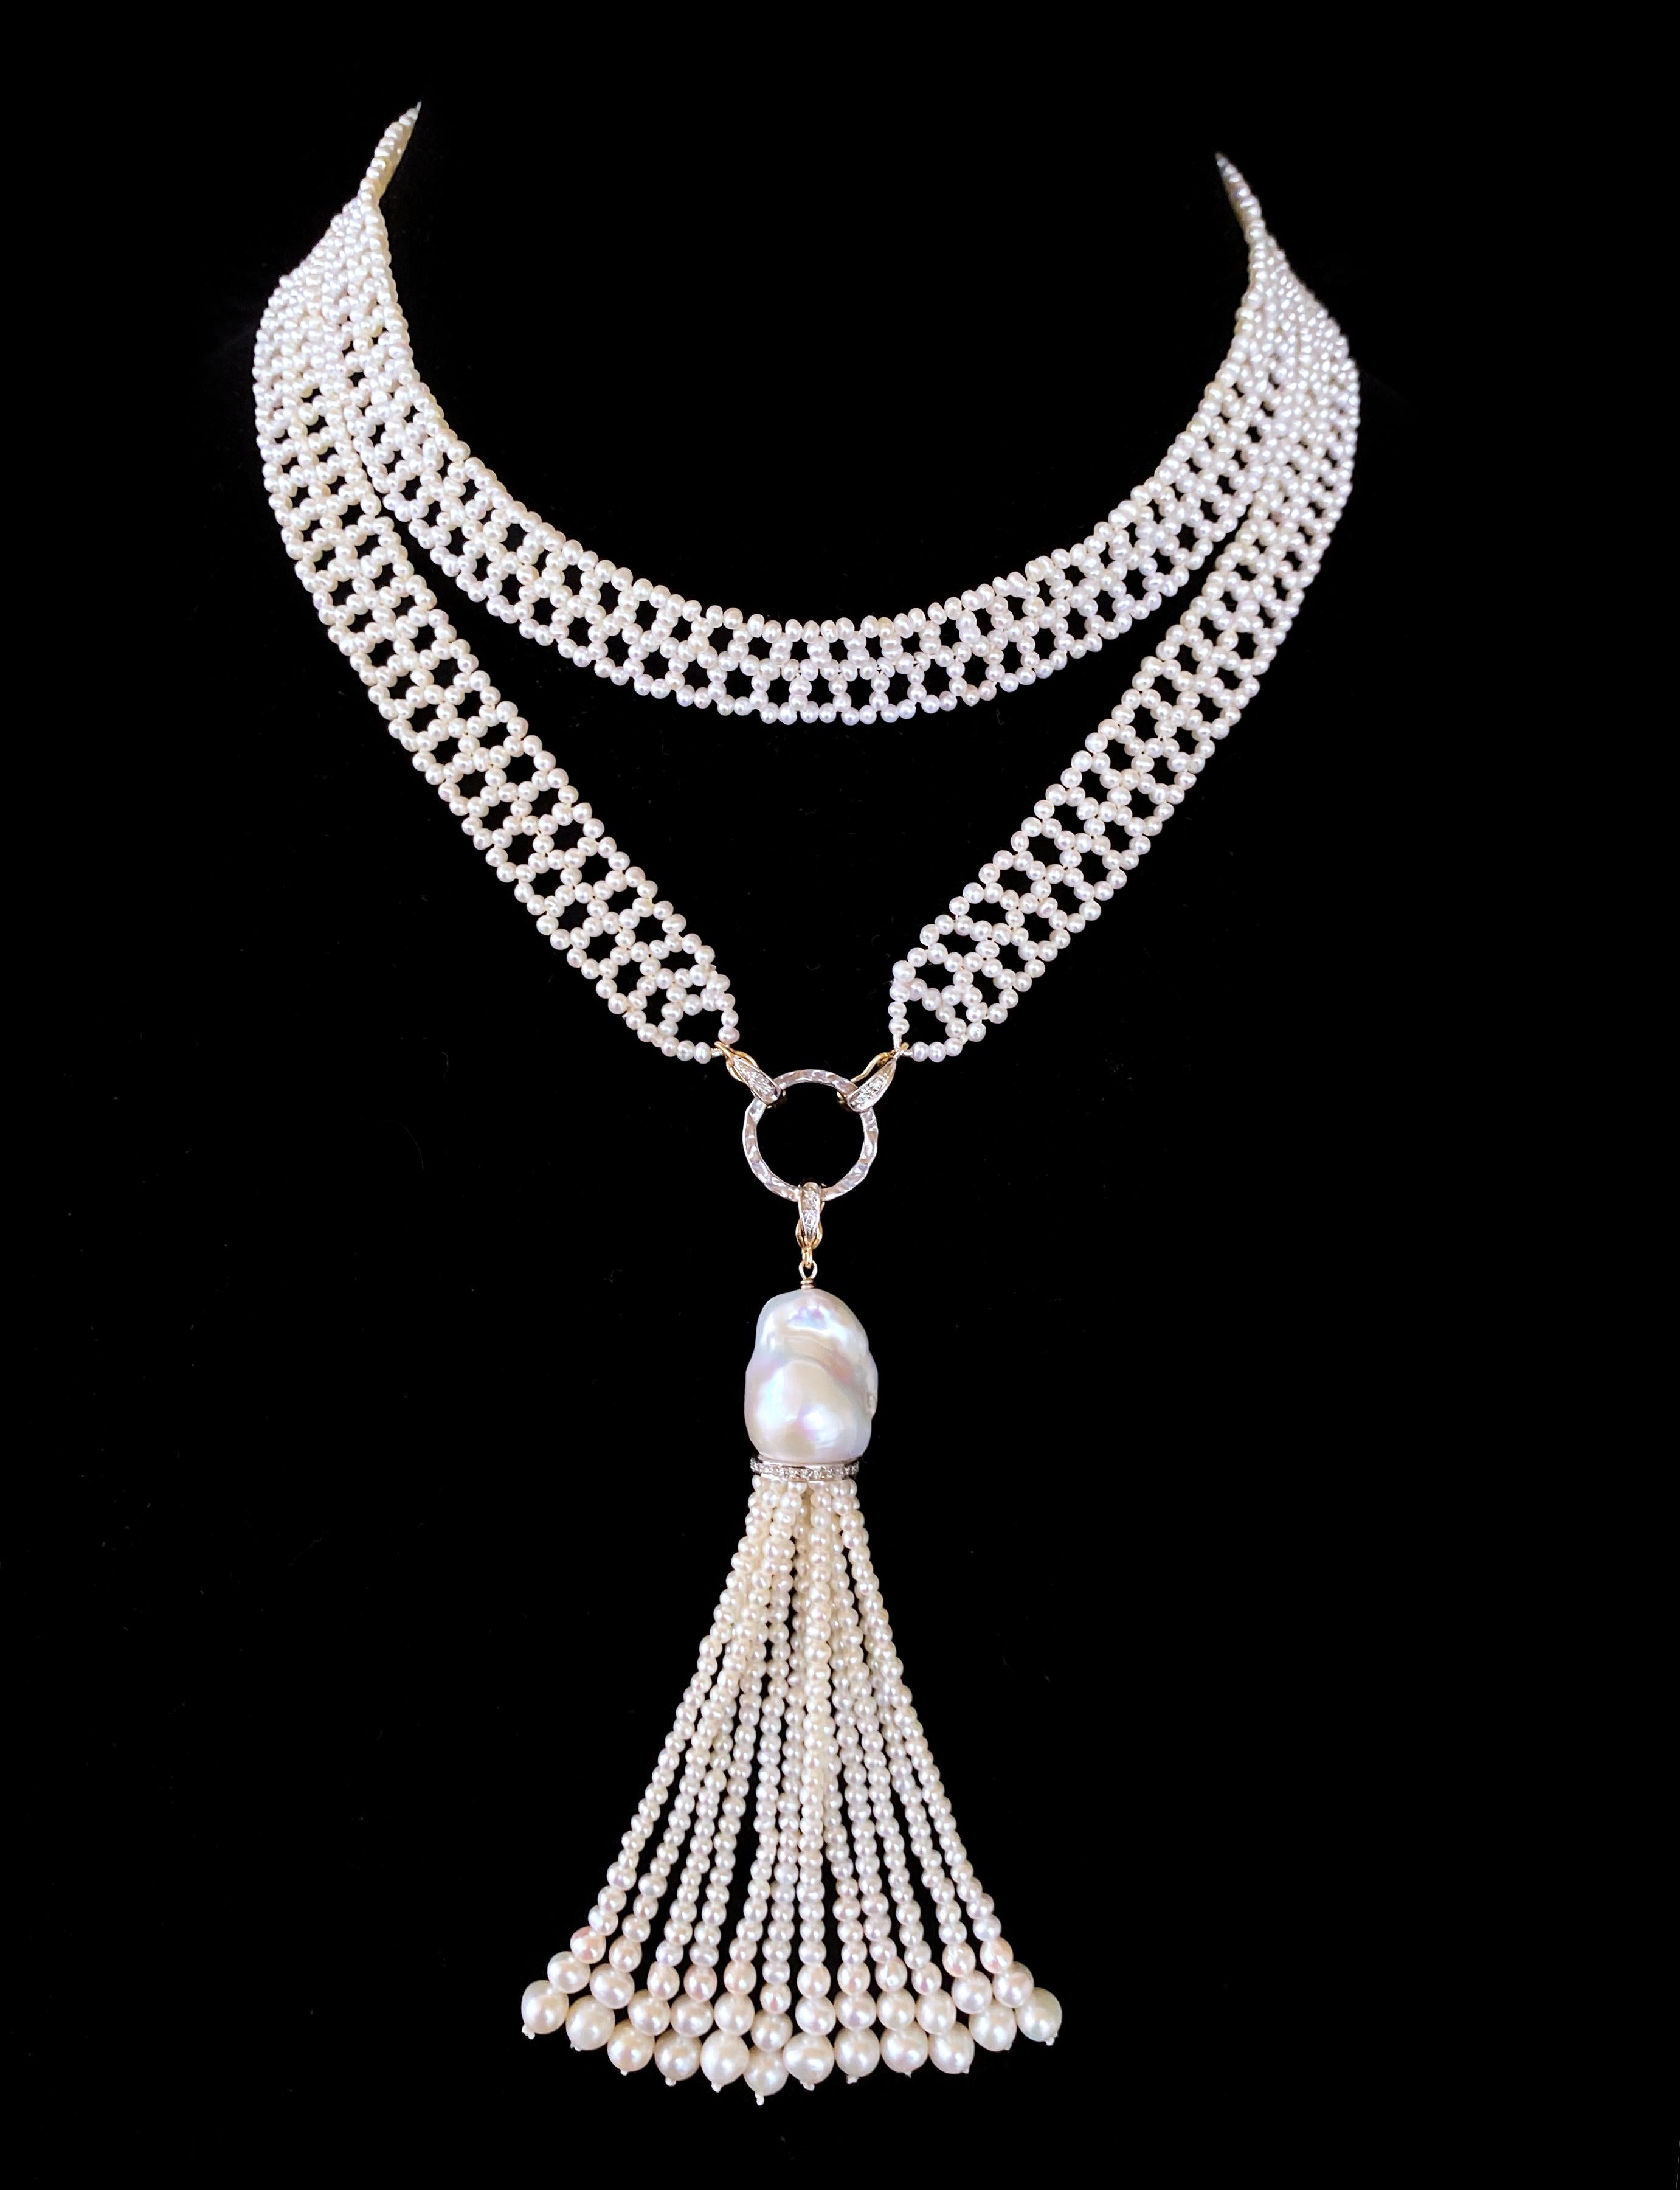 Hergestellt von Marina J. Dieses prächtige viktorianische Sautoir ist mit wunderschönen Perlen besetzt, die in einem feinen, spitzenähnlichen Muster miteinander verwoben sind. Die Saatperlen in diesem Stück haben eine weiße/zarte cremefarbene Farbe